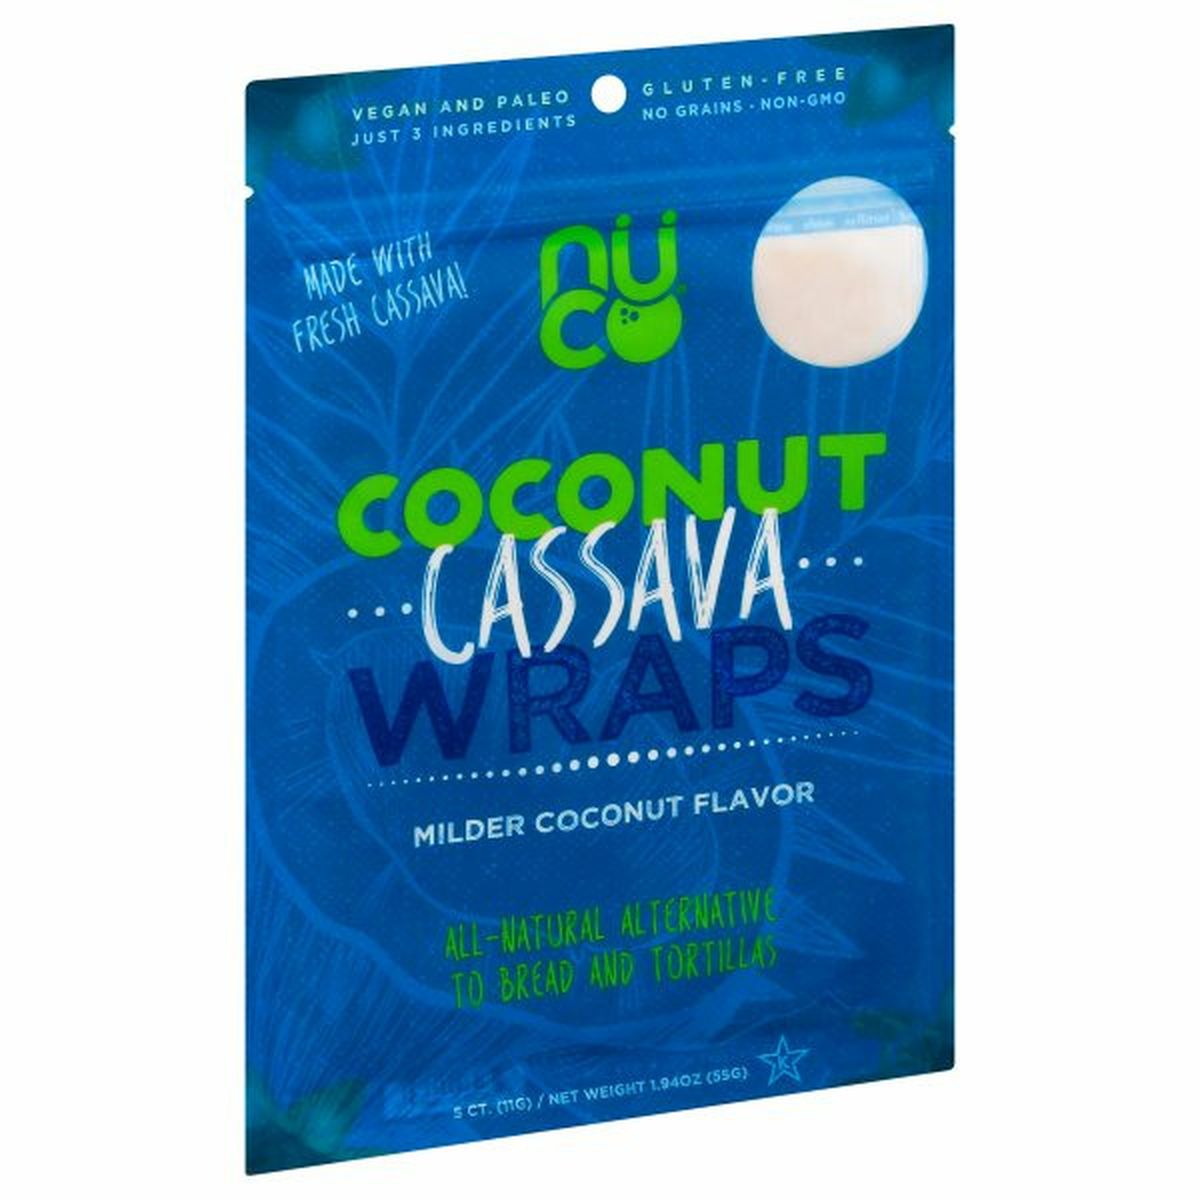 Calories in NUCO Coconut Cassava Wraps, Milder Coconut Flavor